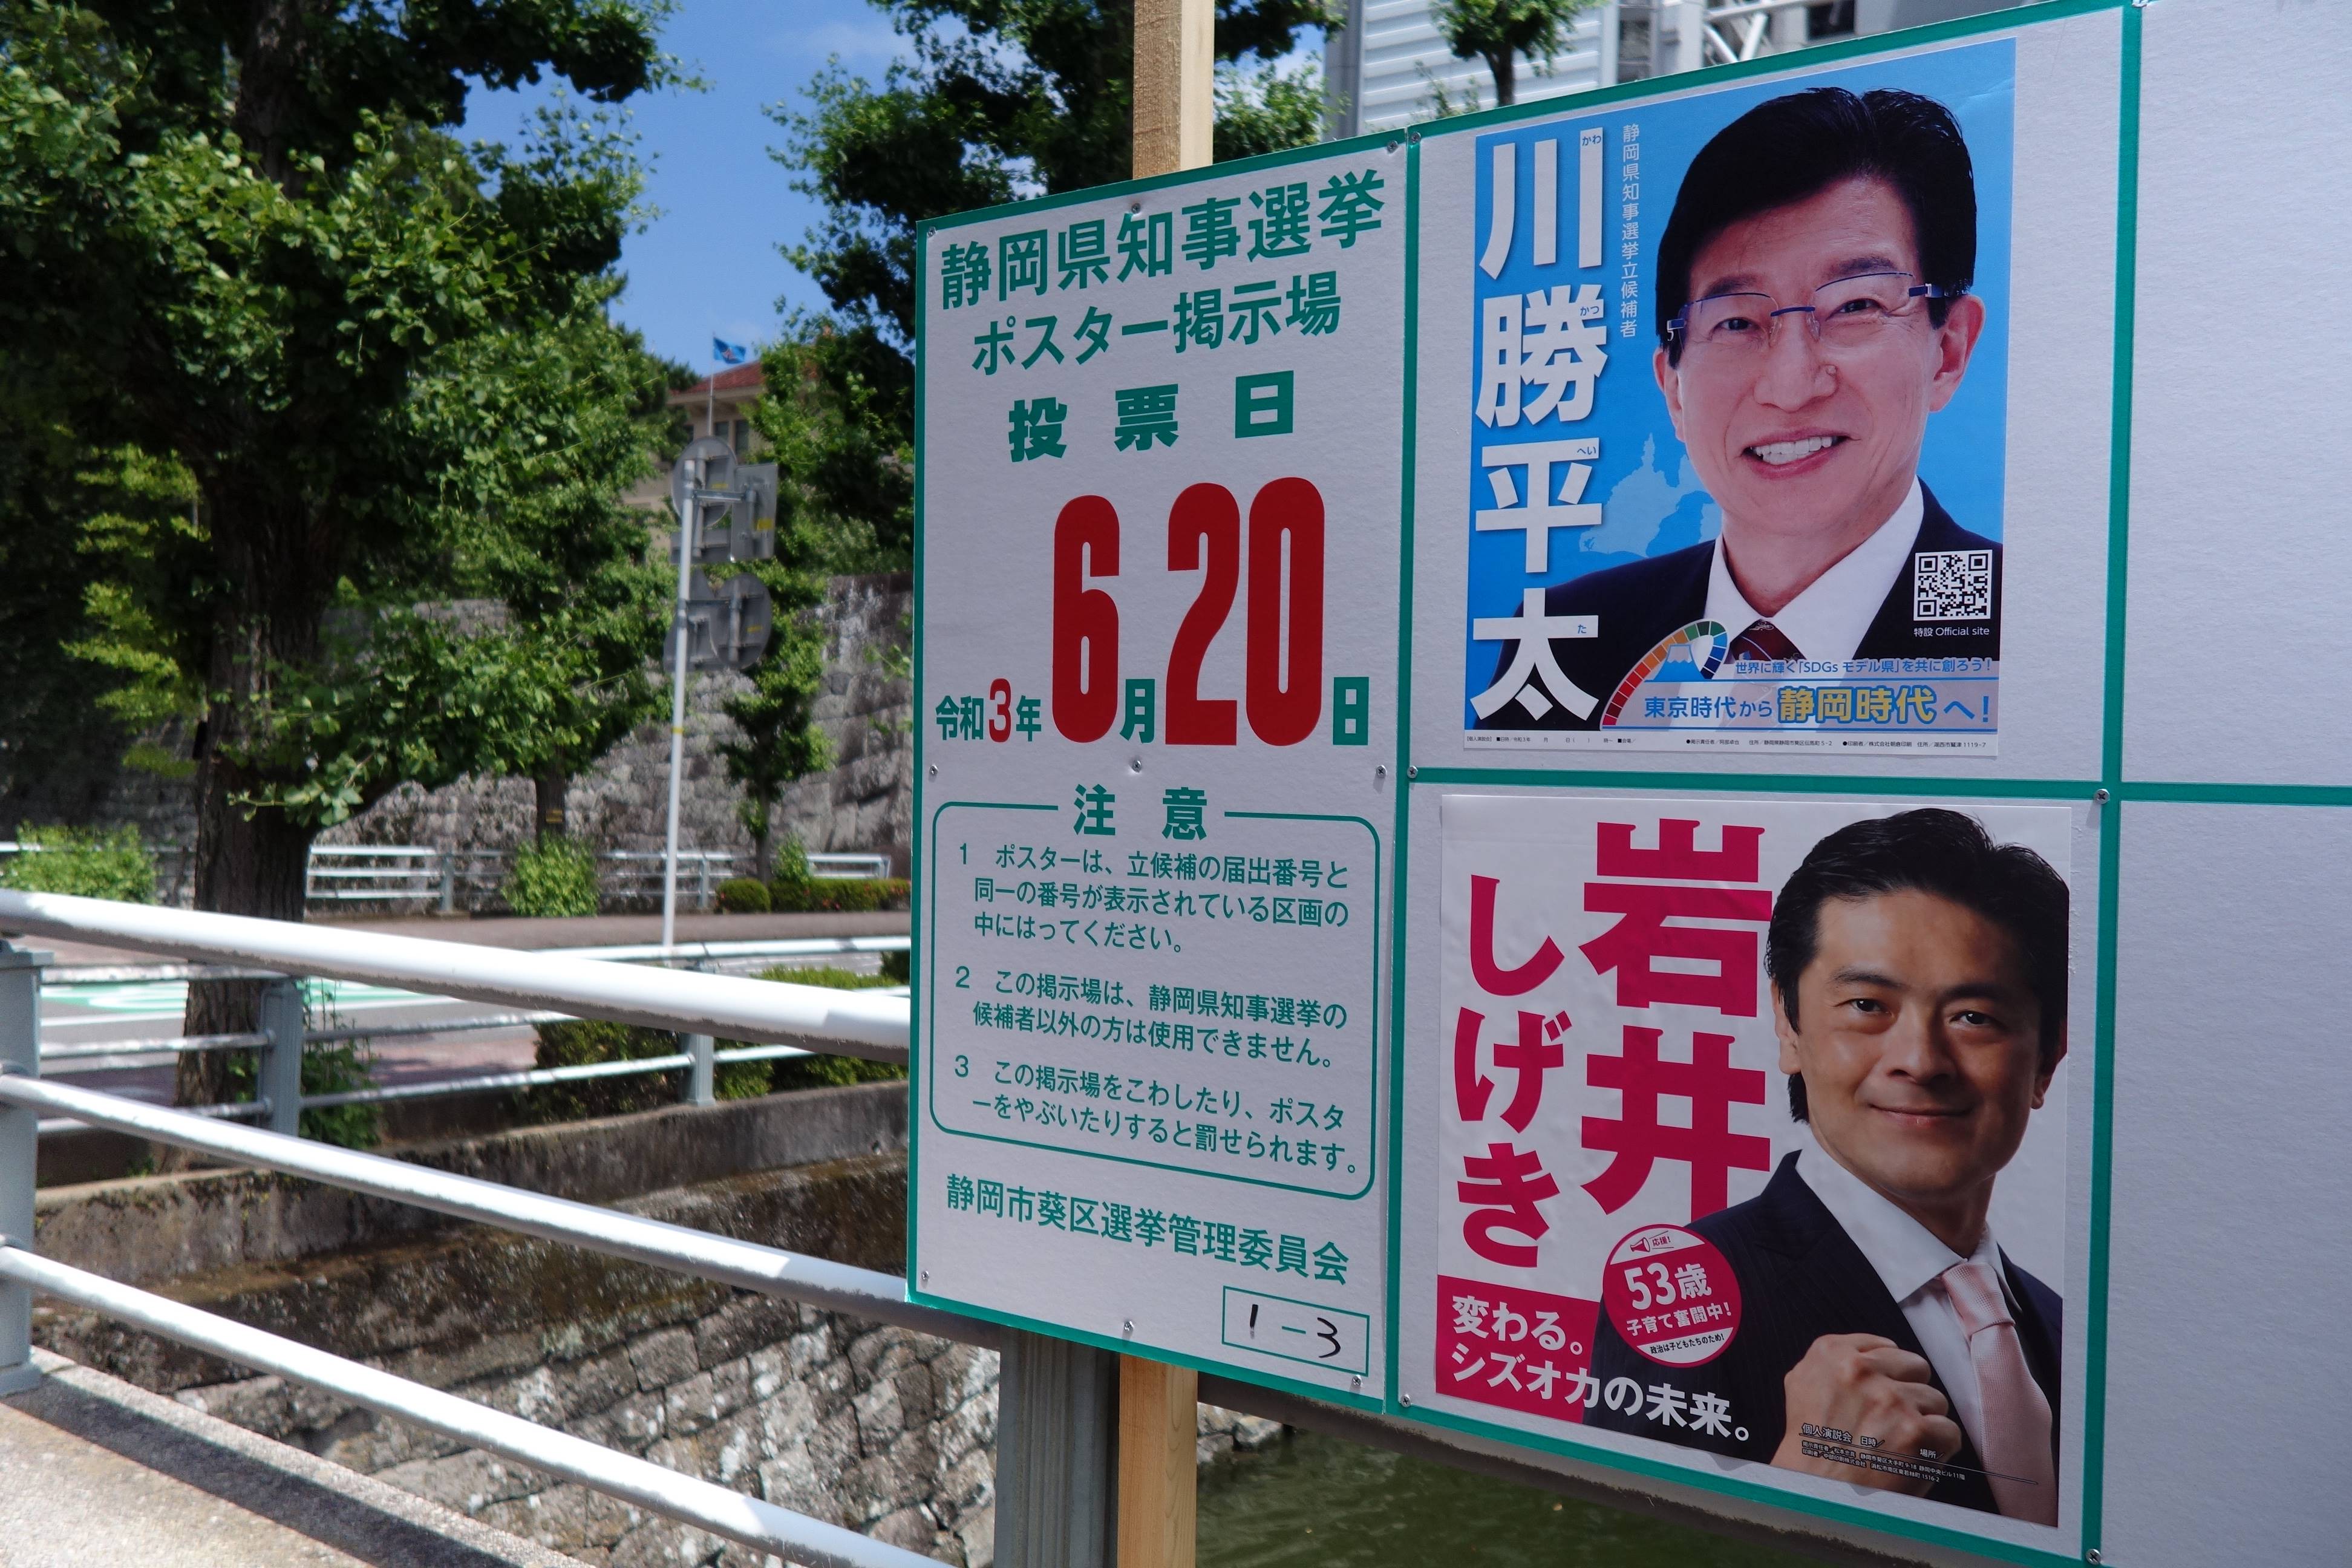 静岡知事選 あす投開票 継続か刷新か 国会議員らも応援に 産経ニュース